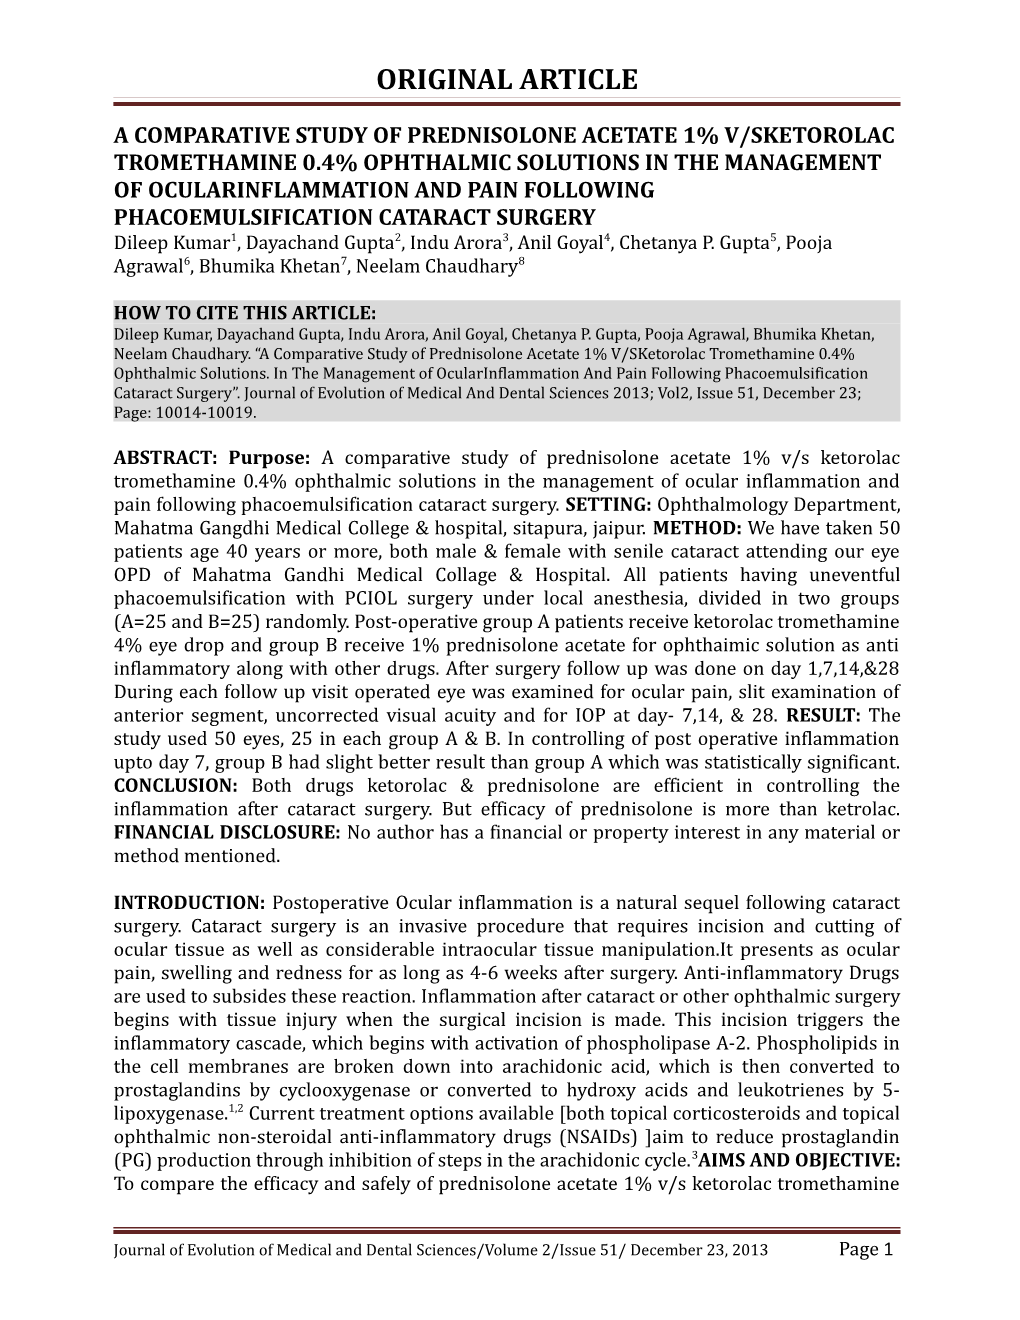 A Comparative Study of Prednisolone Acetate 1% V/Sketorolac